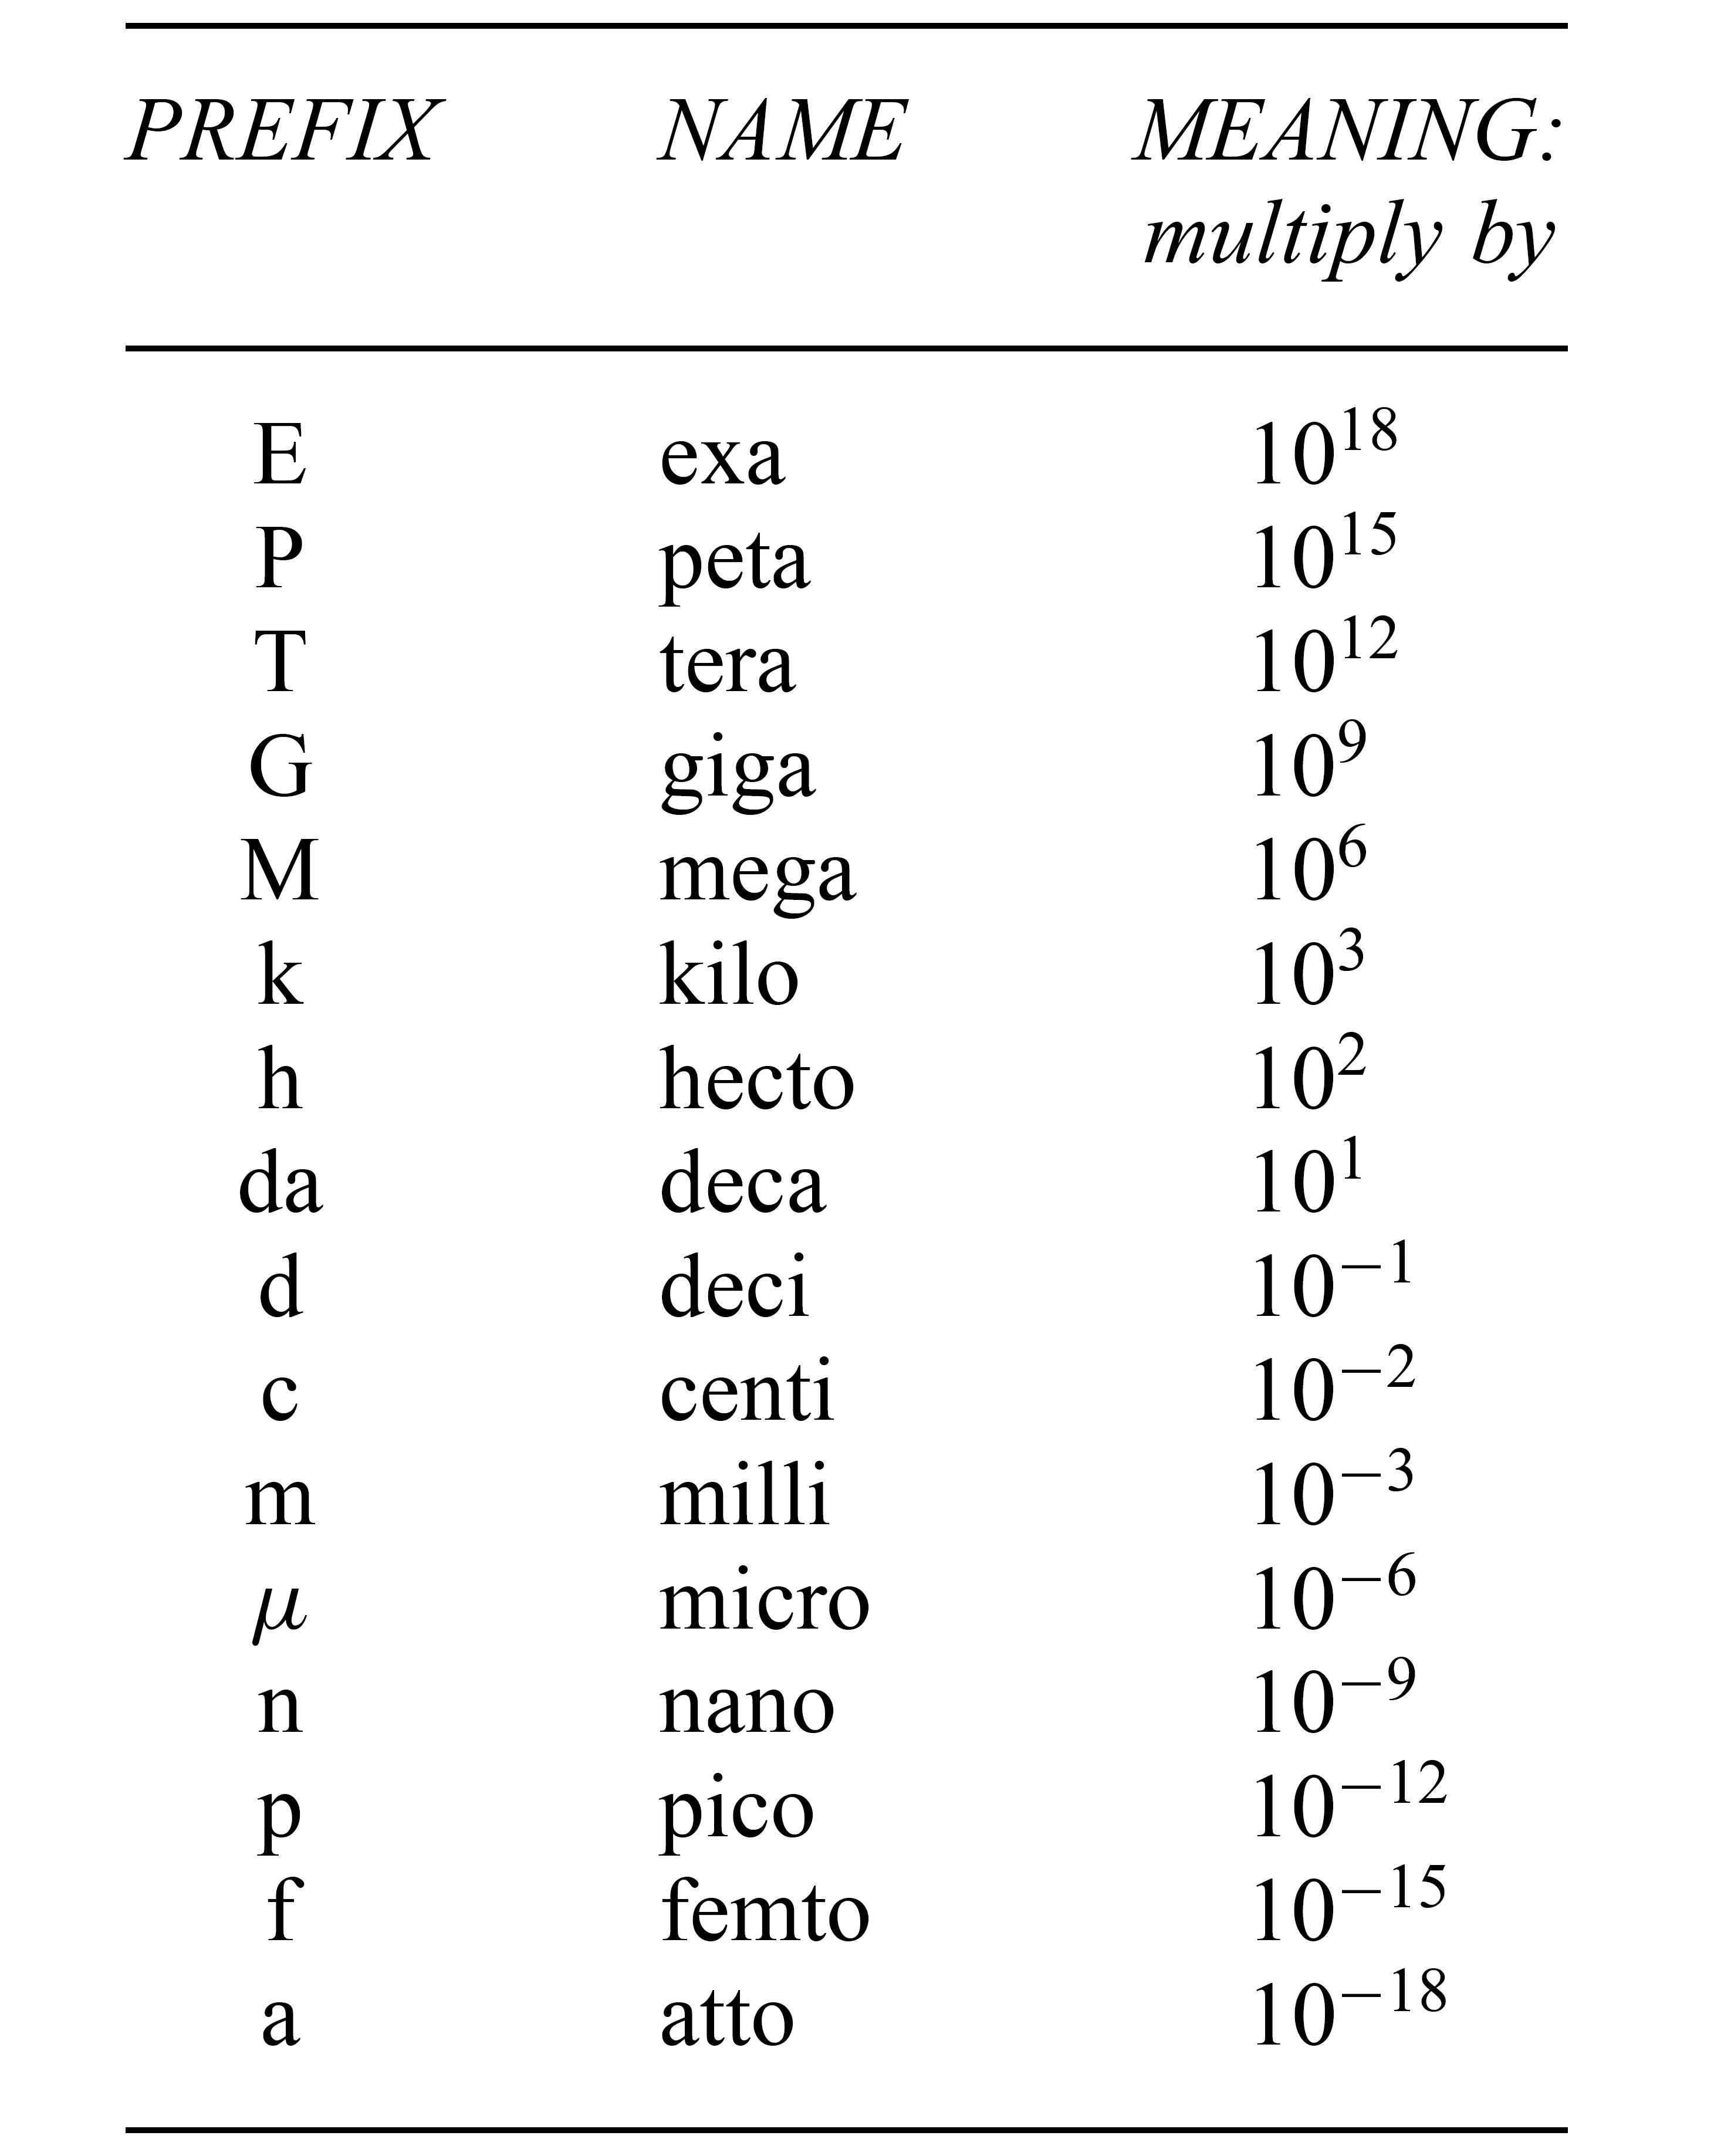 Common prefixes